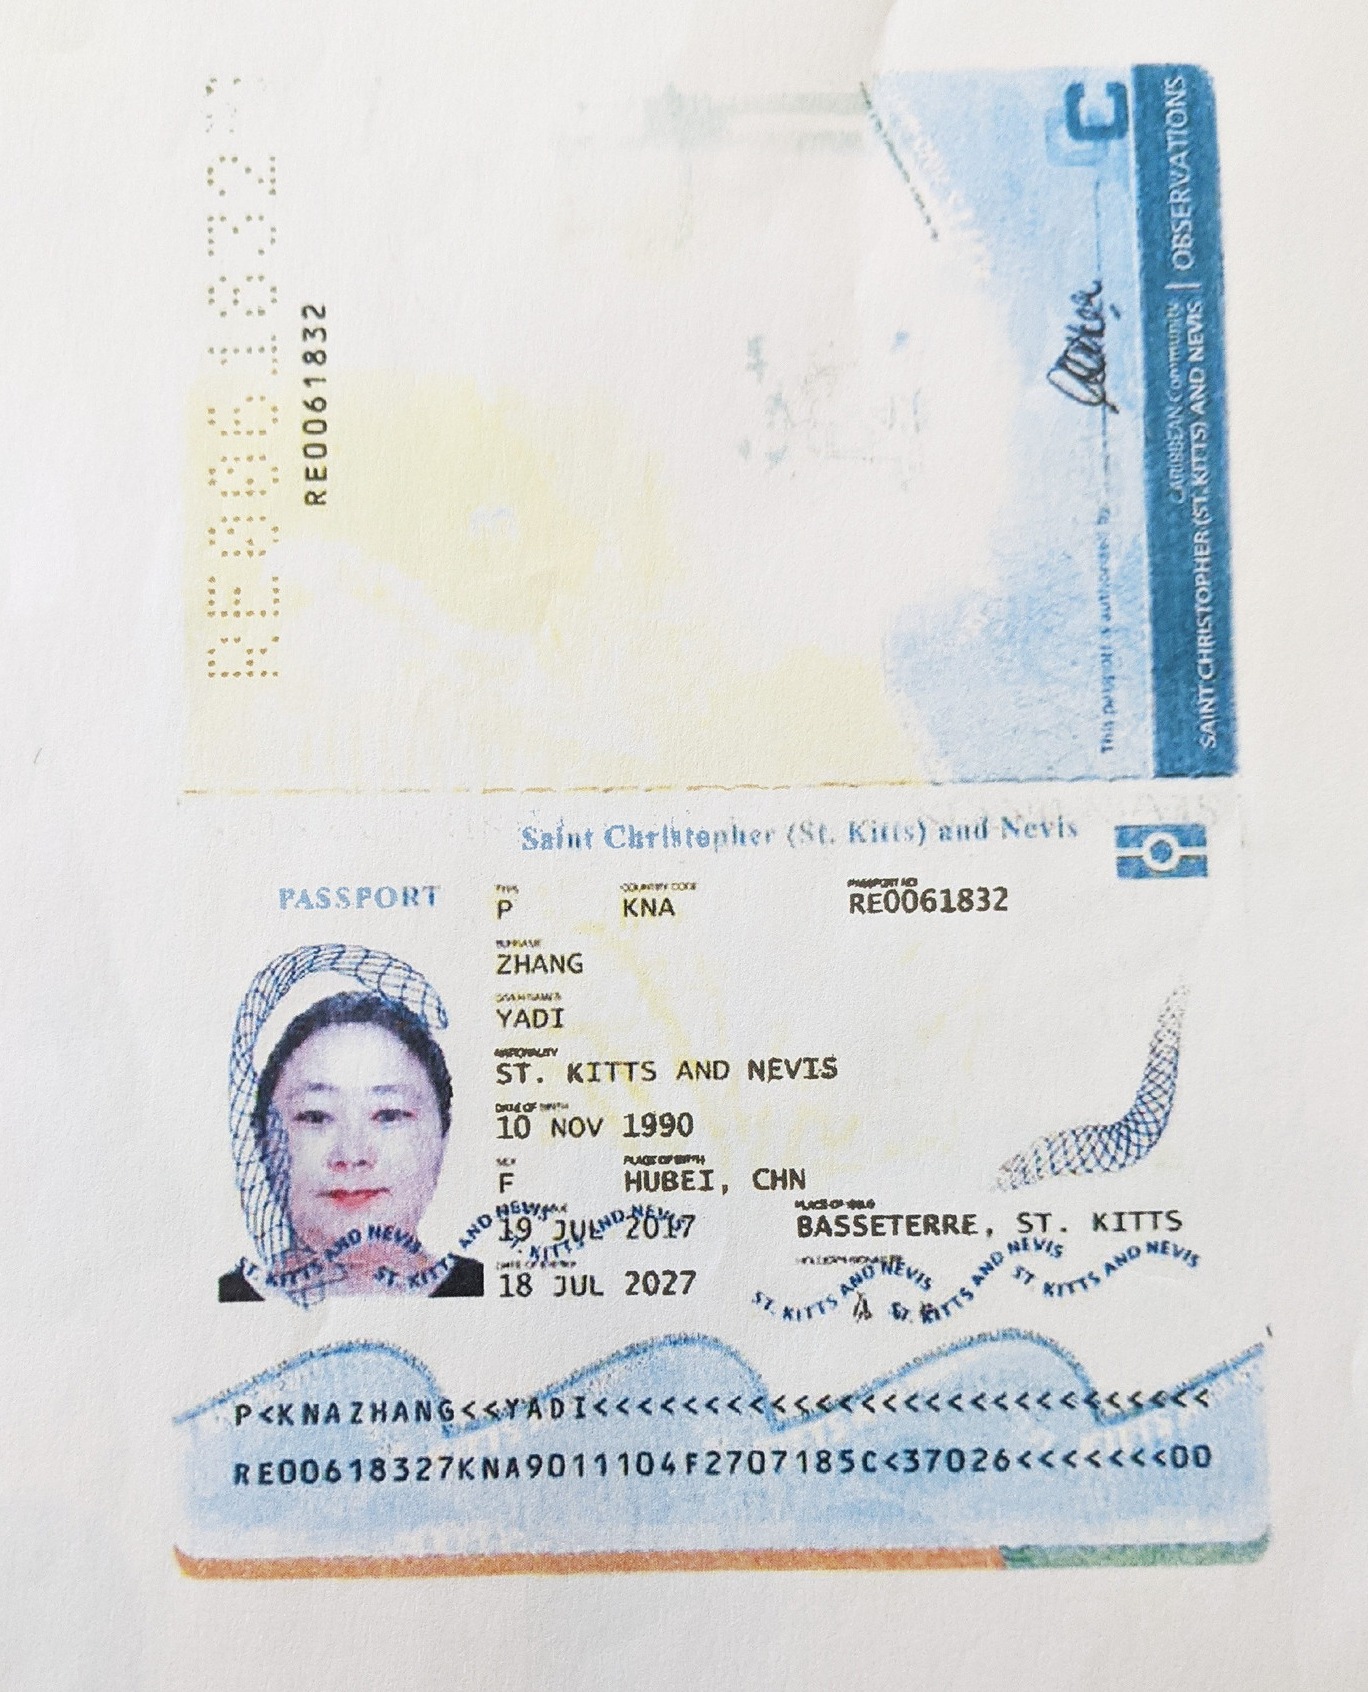 钱志敏于2017年7月使用张亚迪的名字获得圣基茨和尼维斯护照